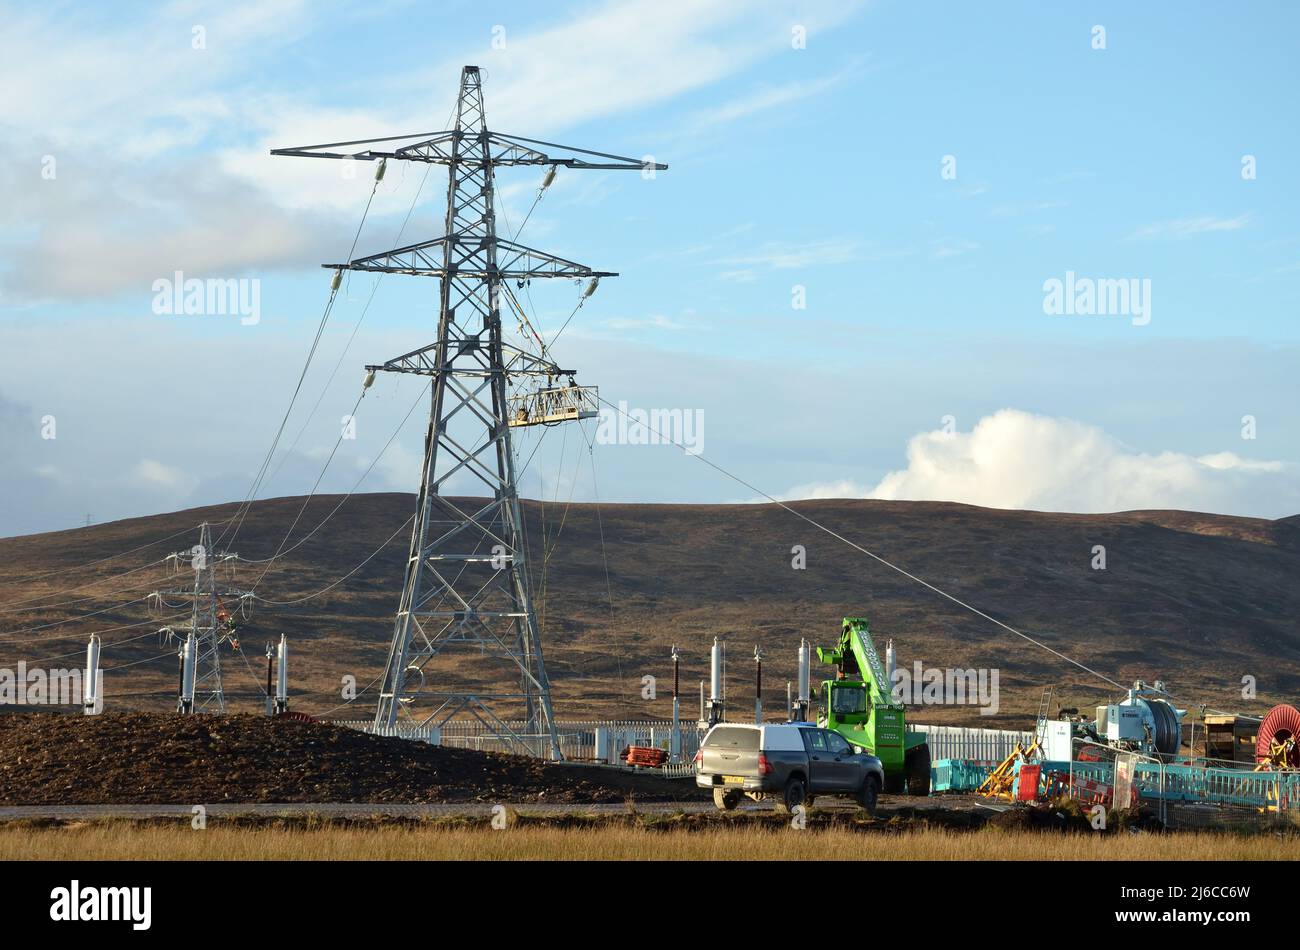 Lavori di costruzione di linee elettriche aeree a Loch Buidhe, vicino a Lairg, nelle Highlands scozzesi, per consentire una maggiore generazione di energia rinnovabile. Foto Stock